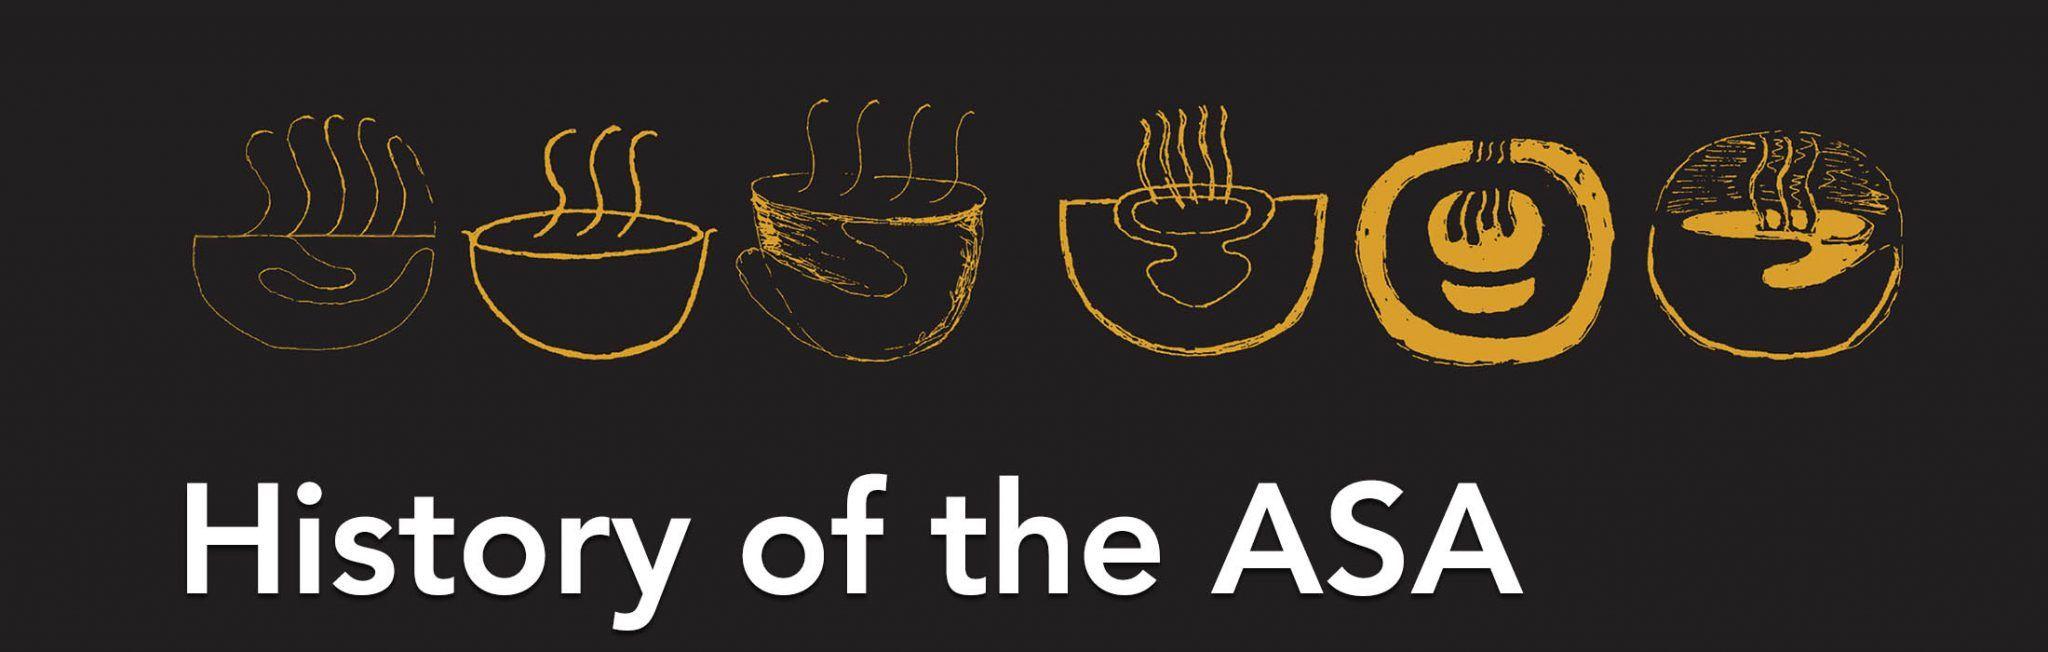 History Logo - History of the Society & ASA logo - ASA